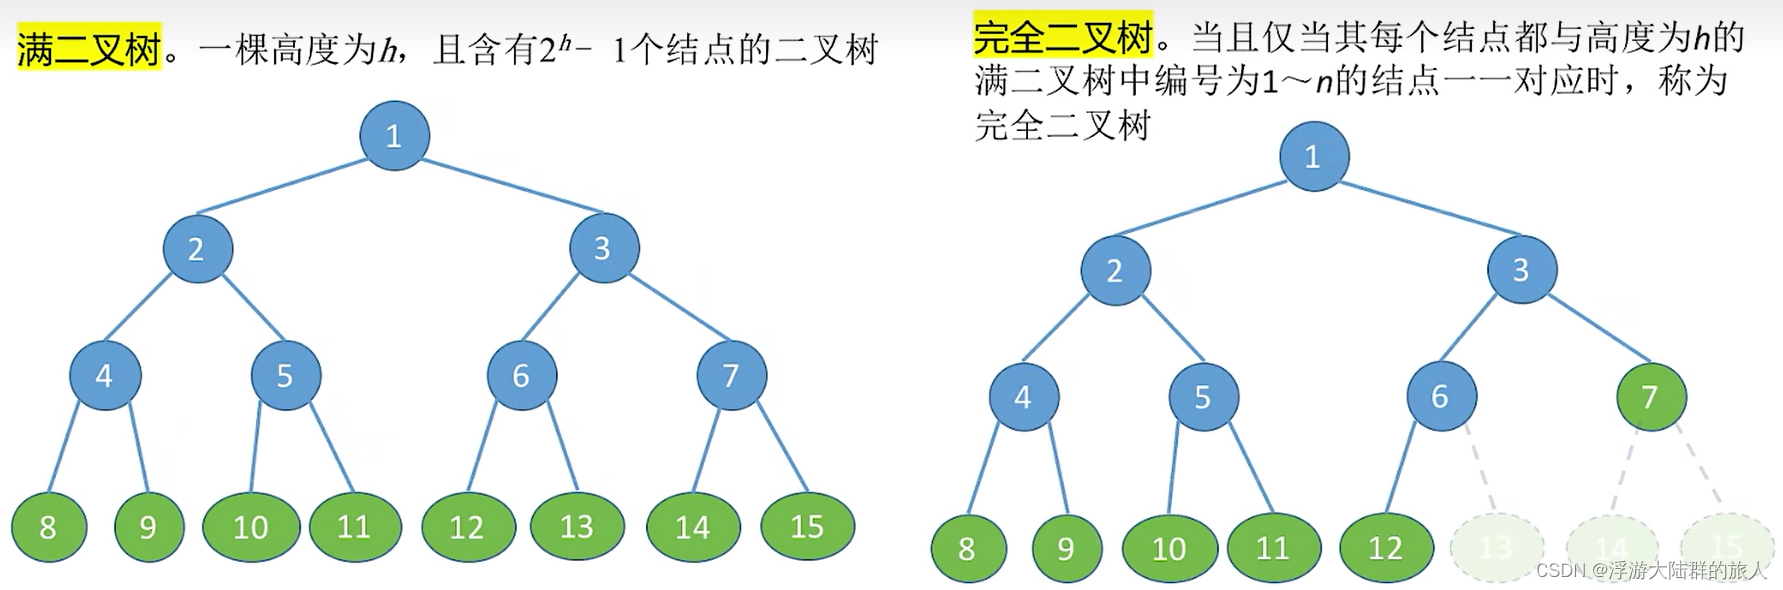 408数据结构-二叉树的概念、性质与存储结构 自学知识点整理